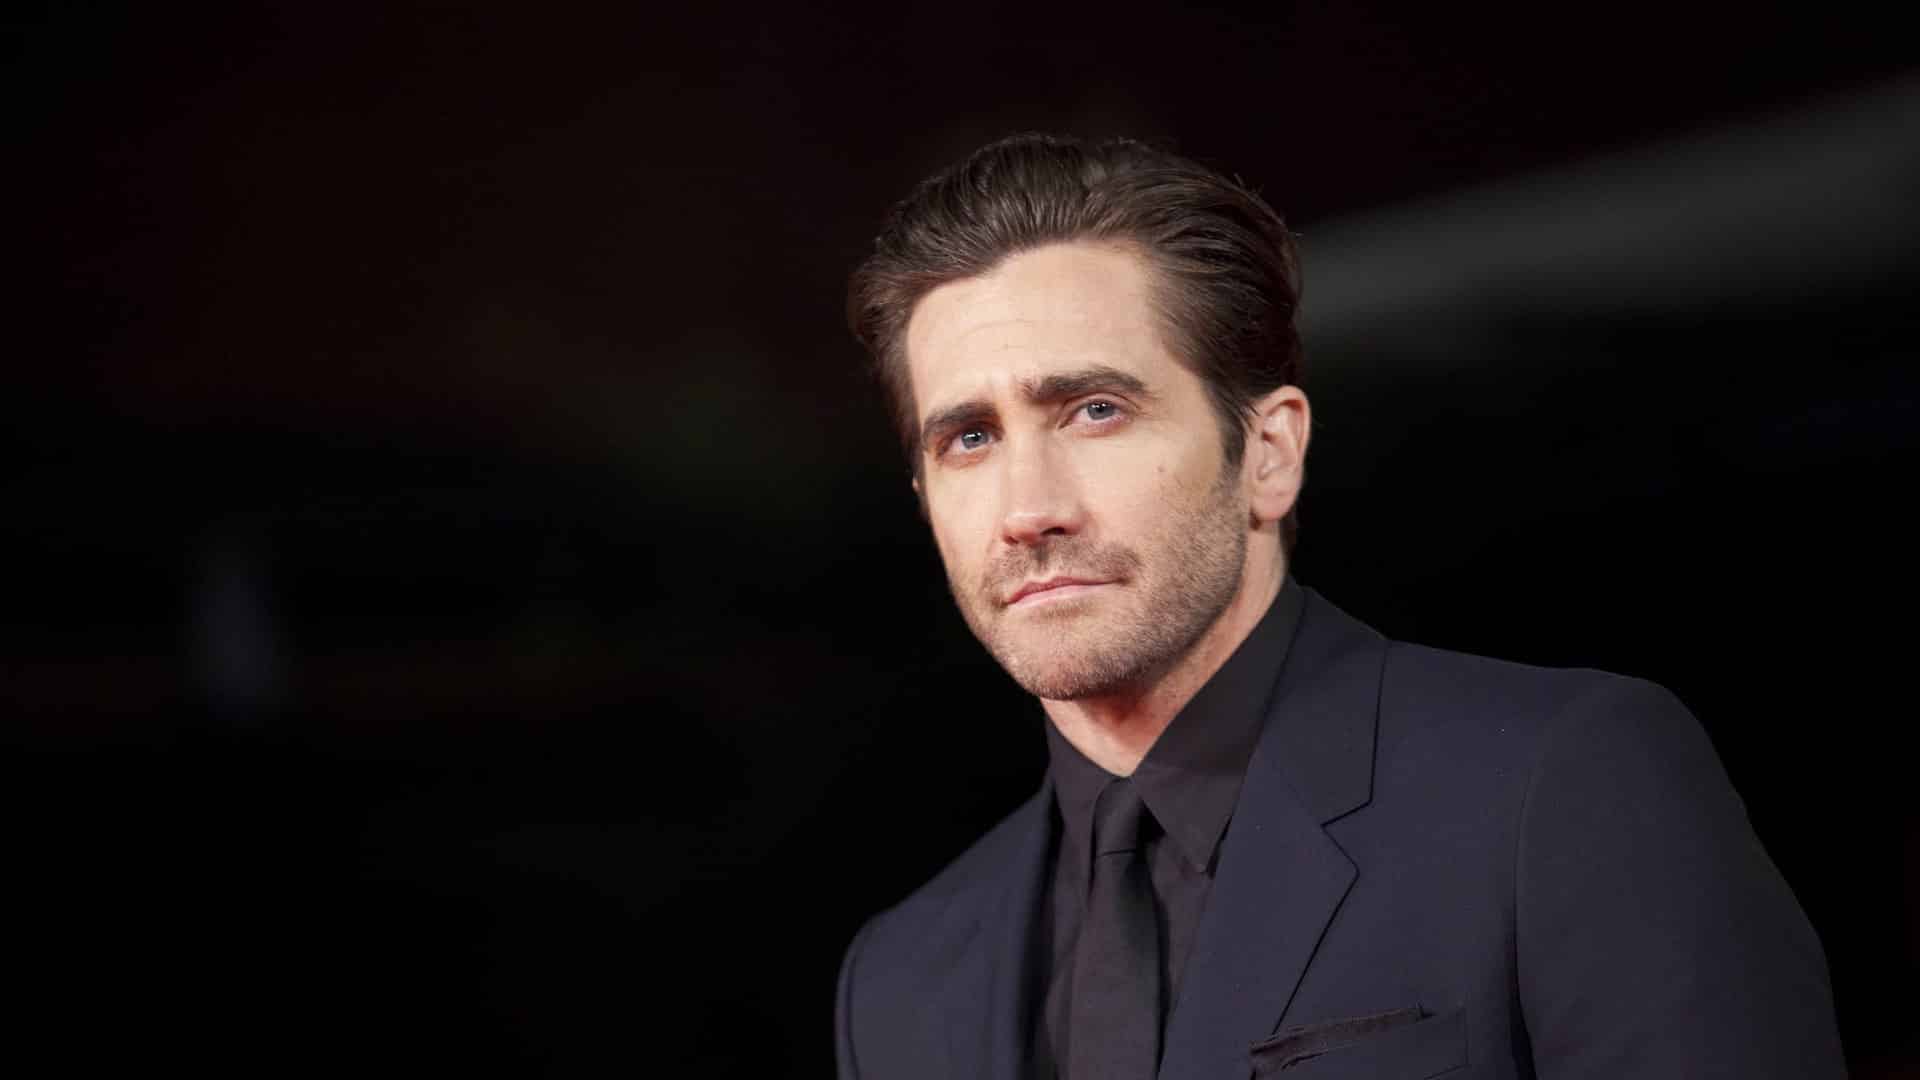 Jake Gyllenhaal: 12 curiosità tra carriera, famiglia e predilezioni personali